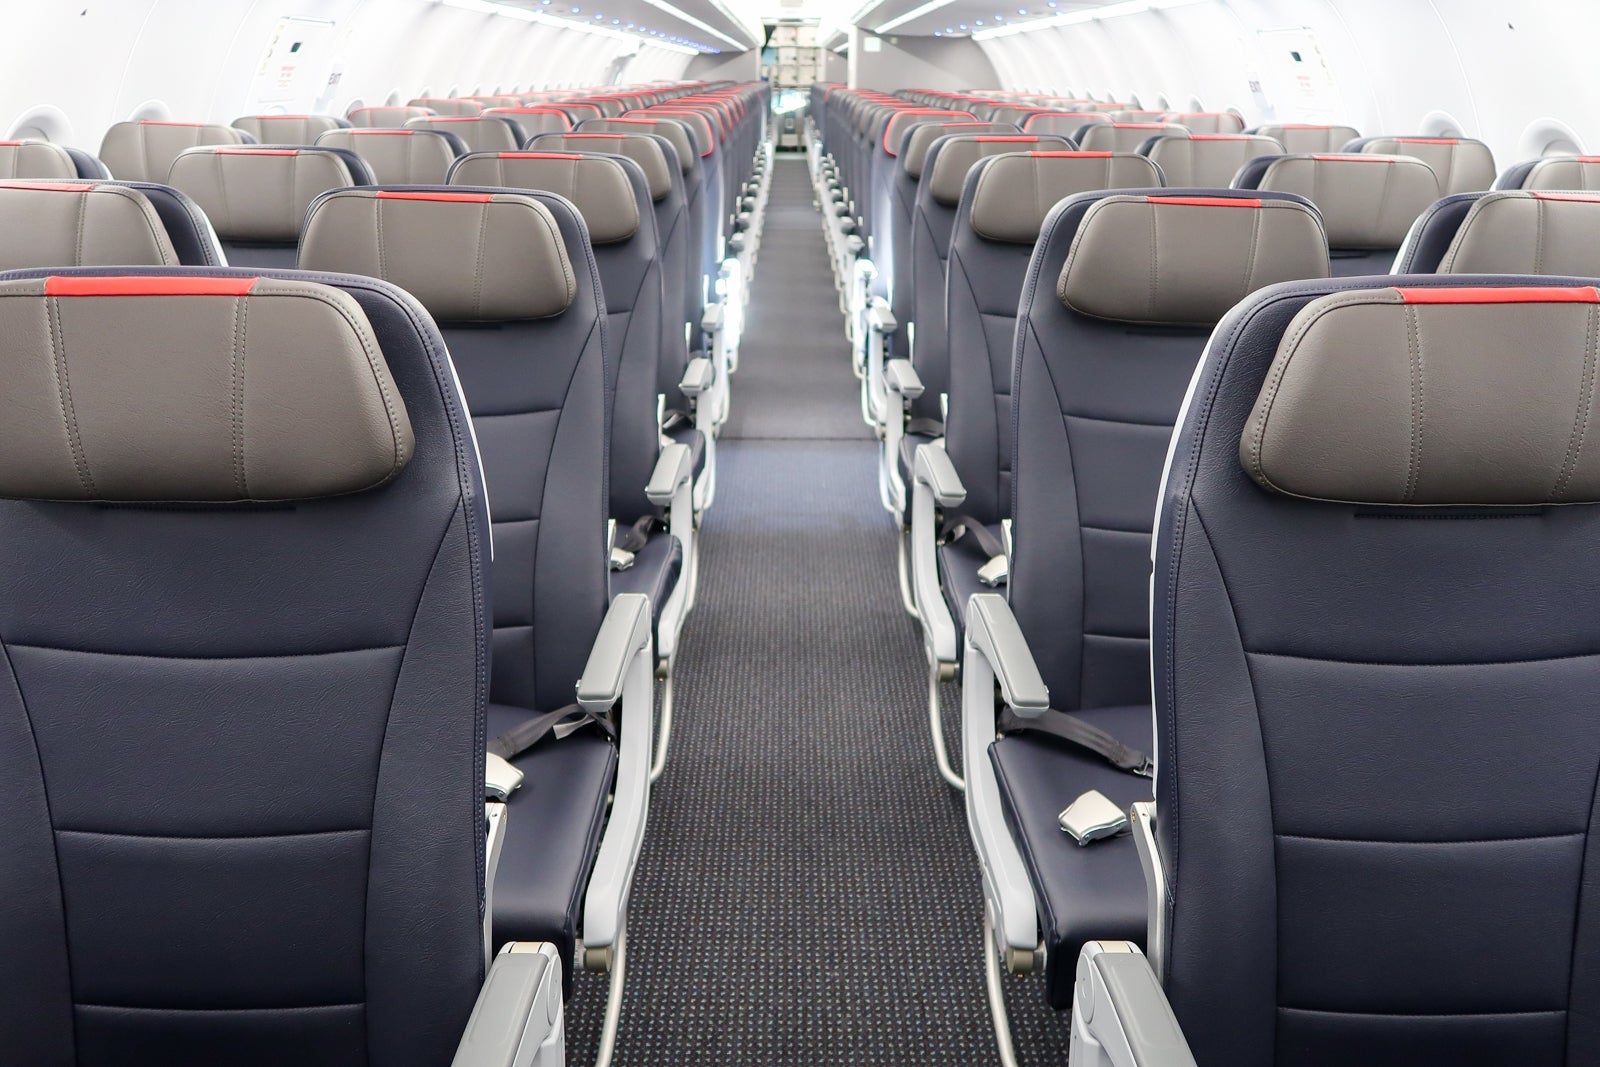 AA A321neo economy seats aisle